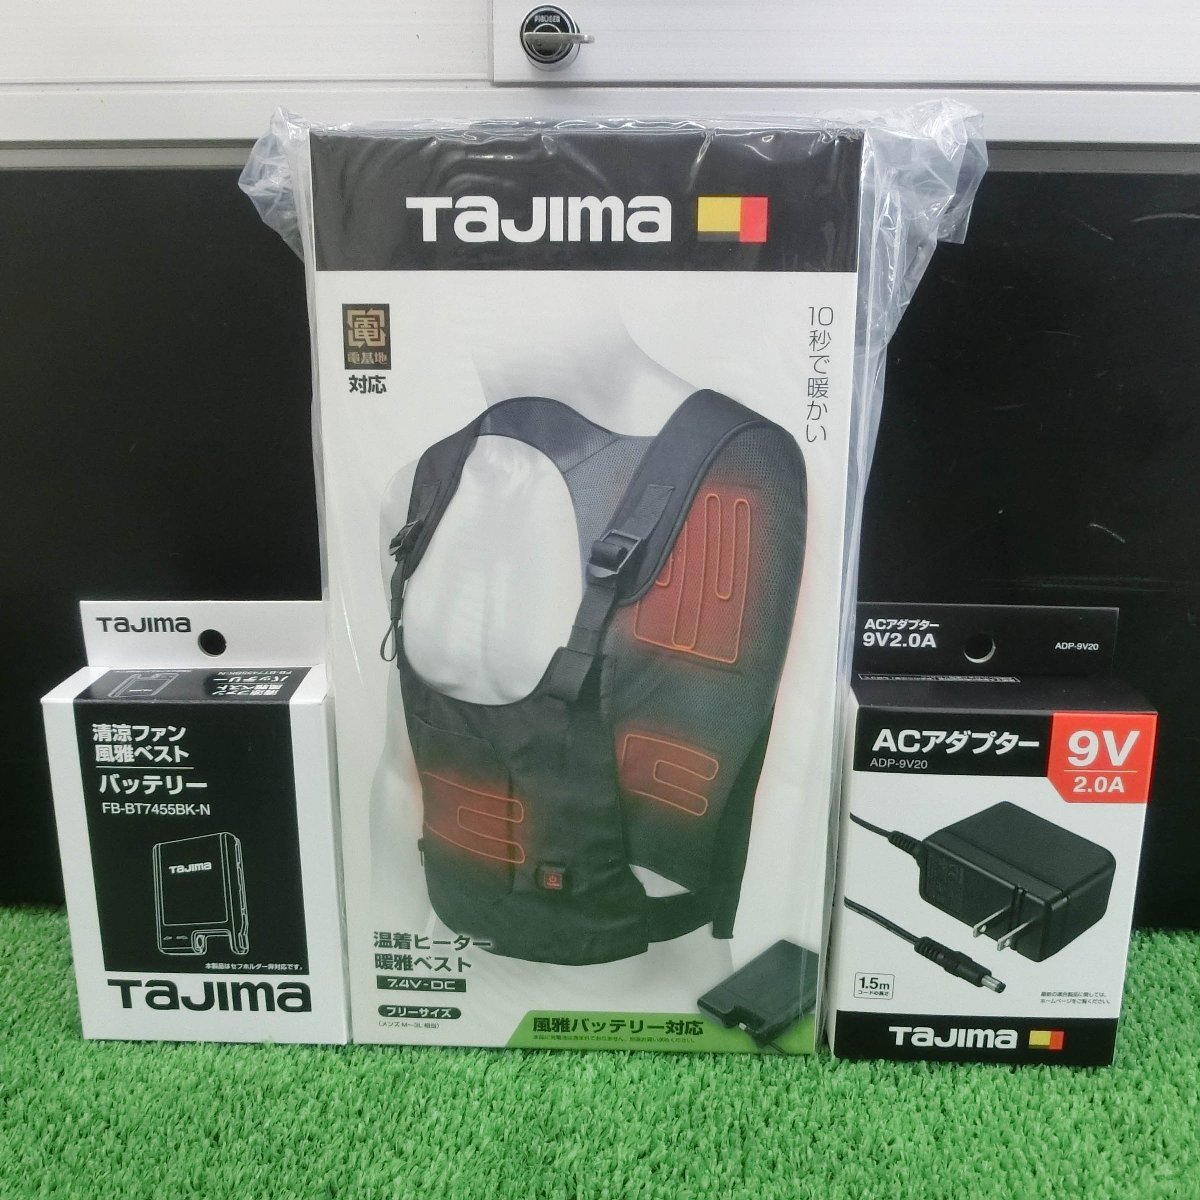 バッテリー付! Tajima タジマ 7.4V 温着ヒーター 暖雅ベスト HD-VE741N ...